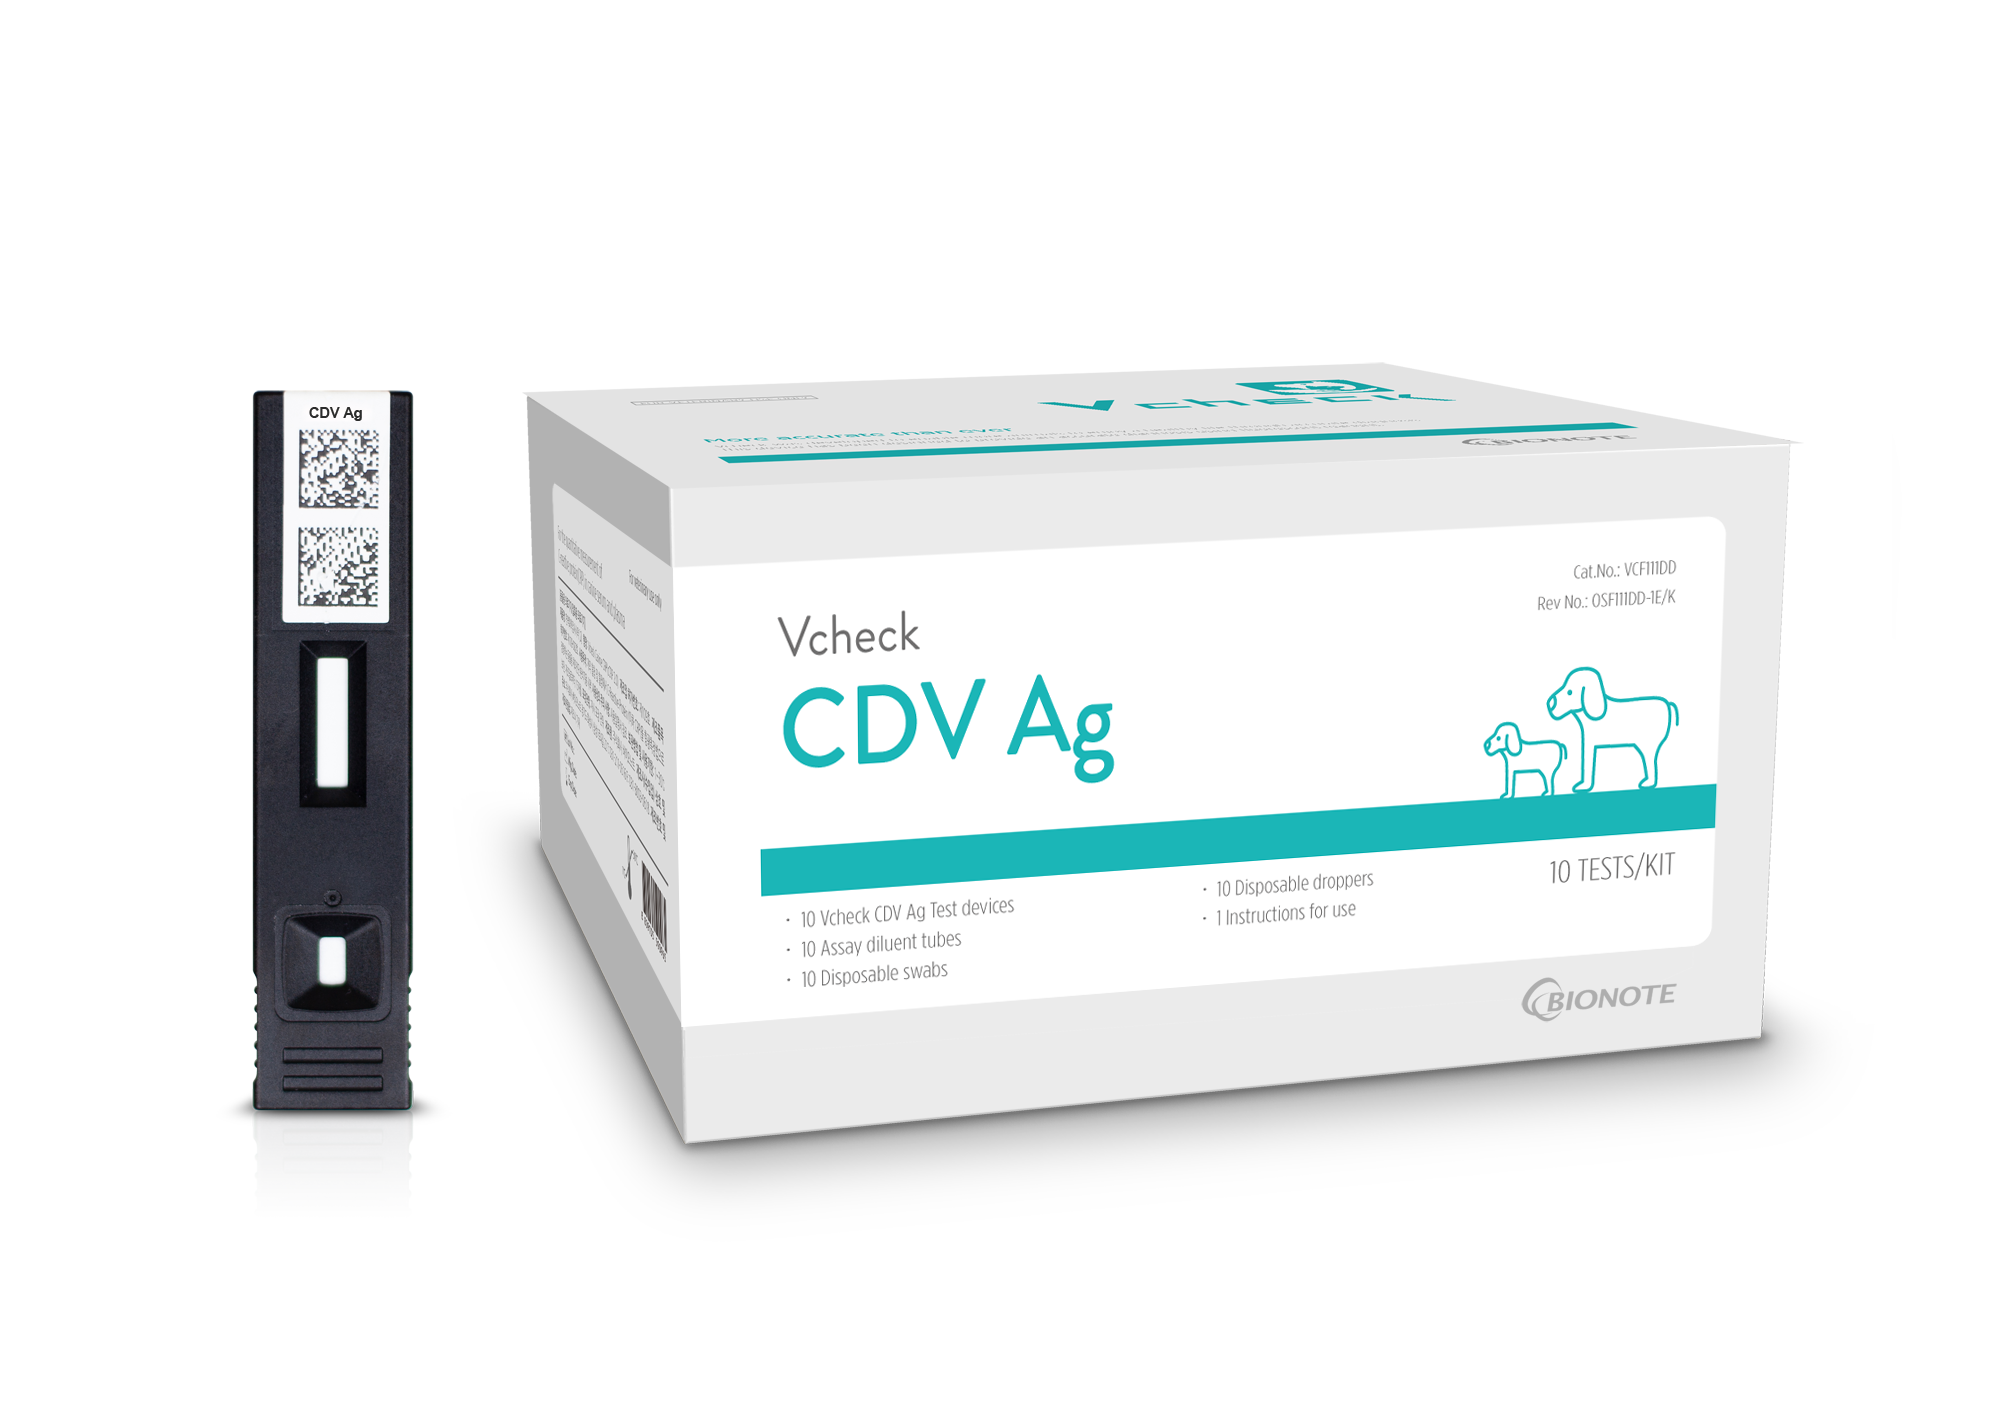 Vcheck CDV Ag (Canine Distemper virus)